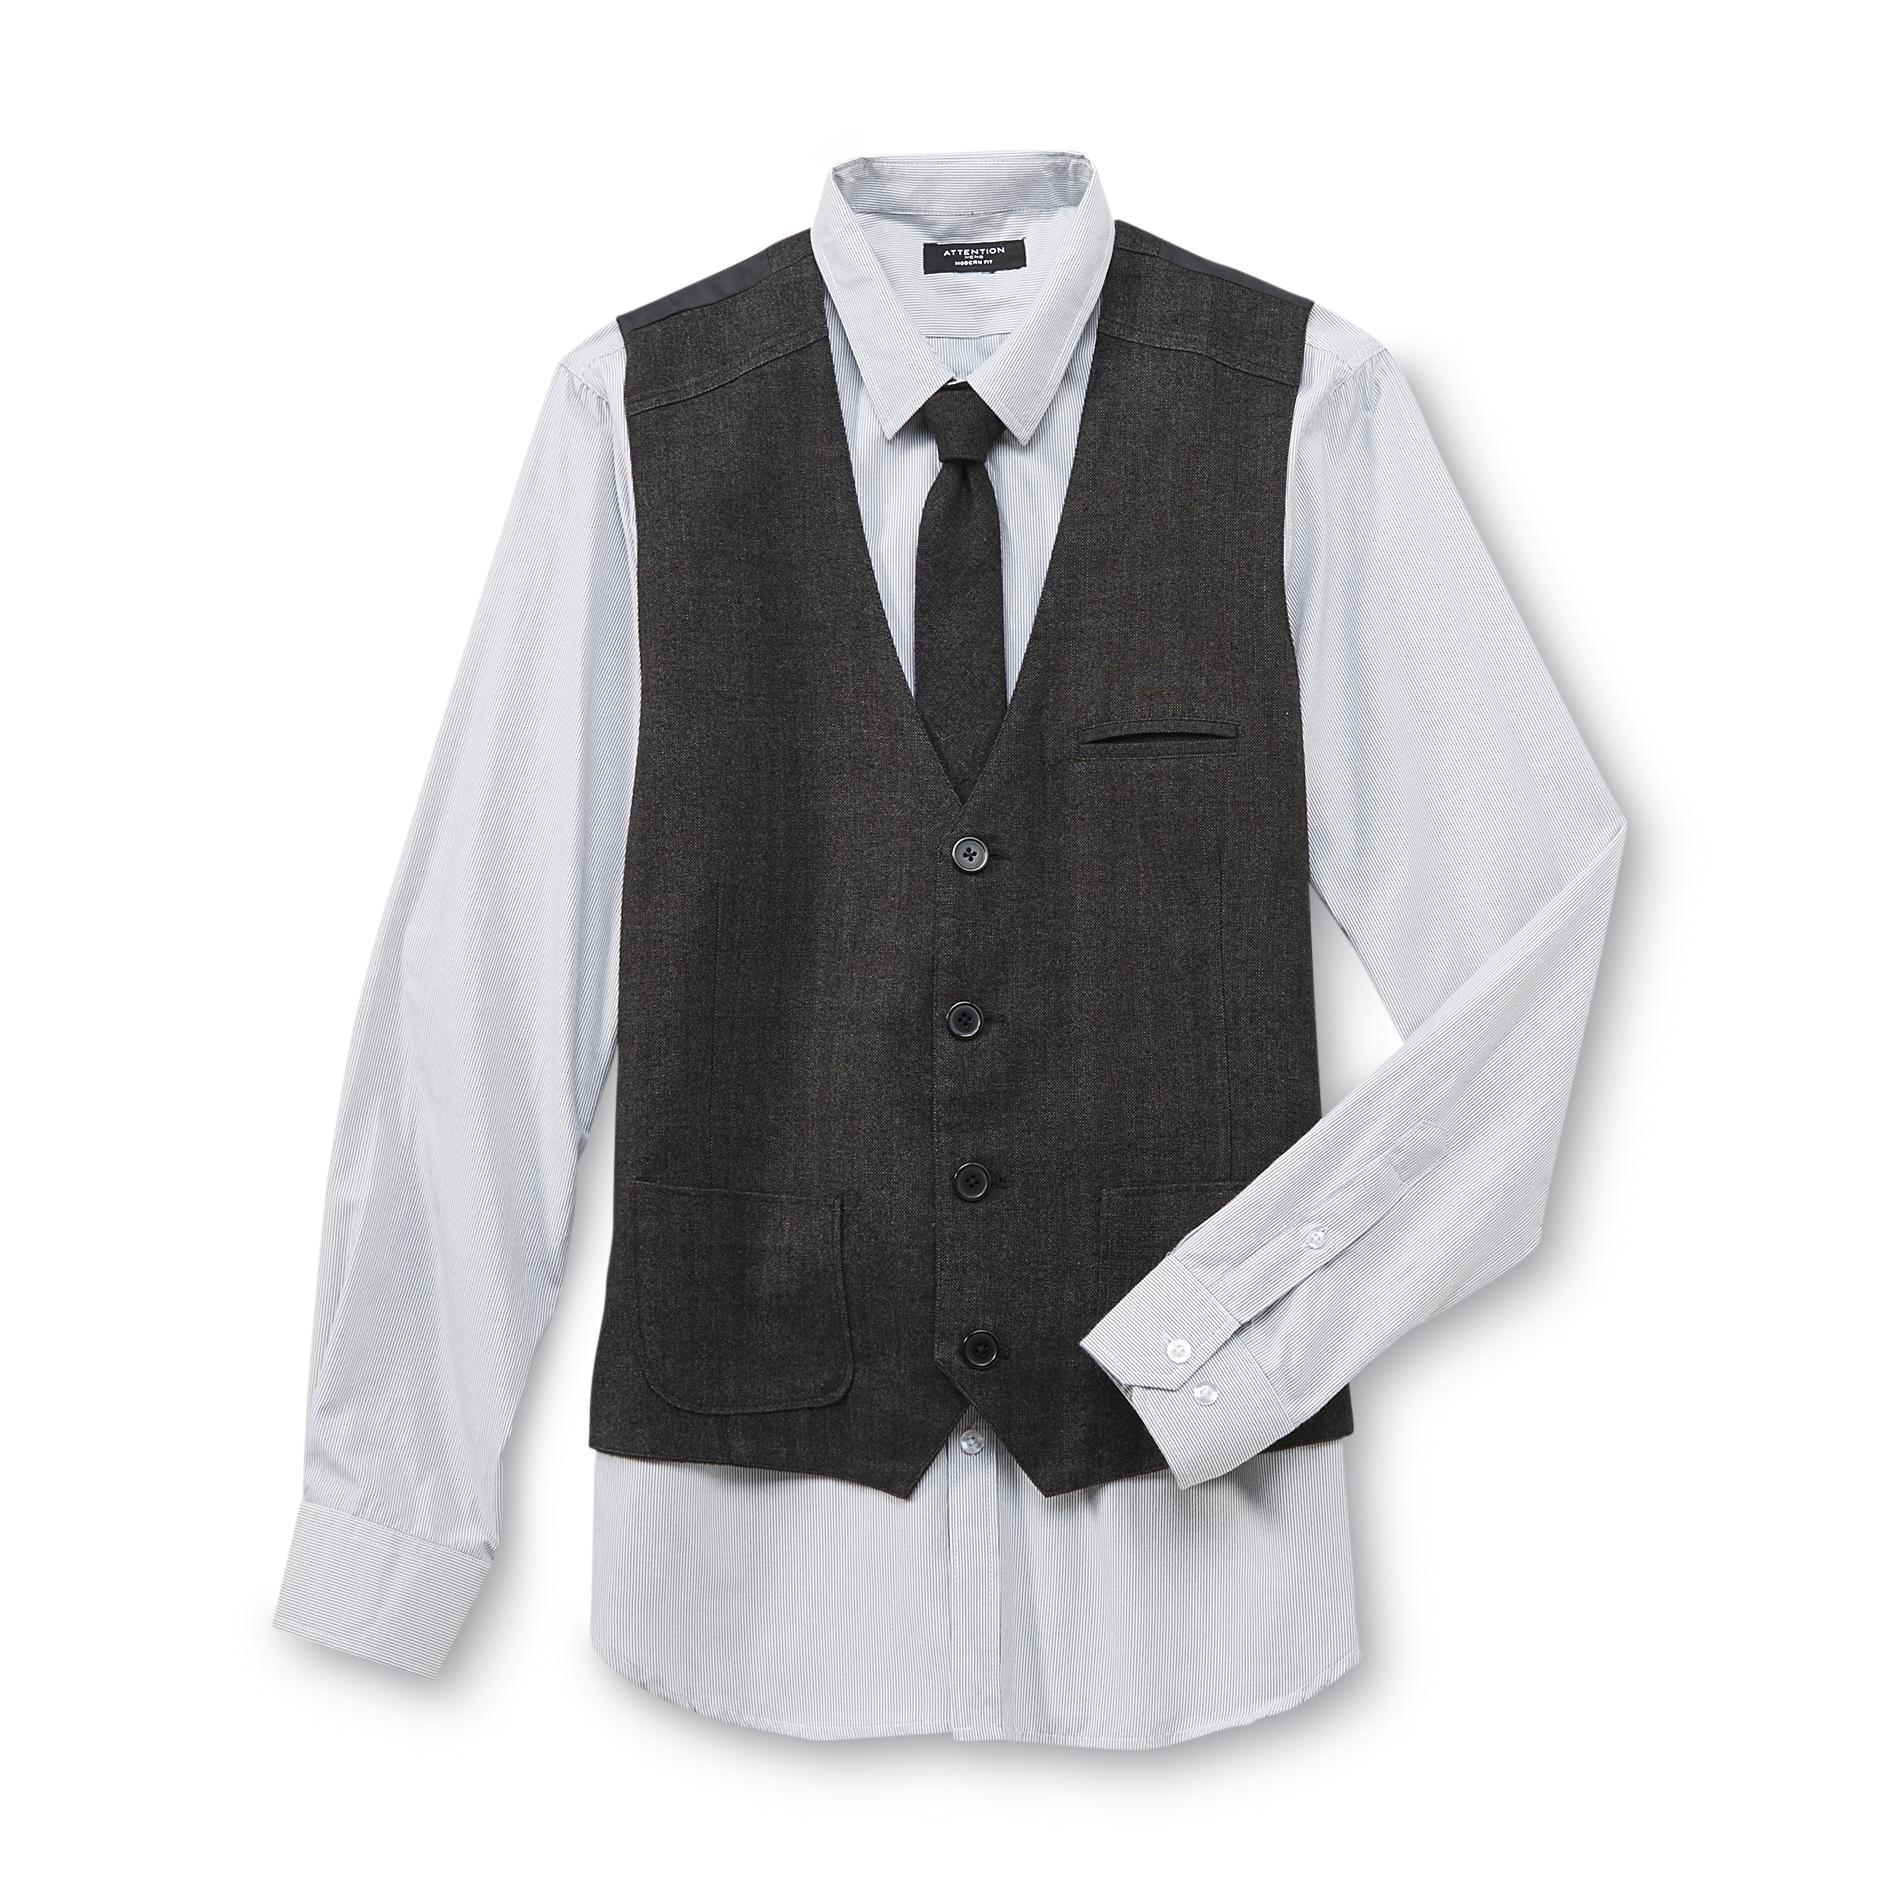 Attention Men's Vest  Shirt & Necktie